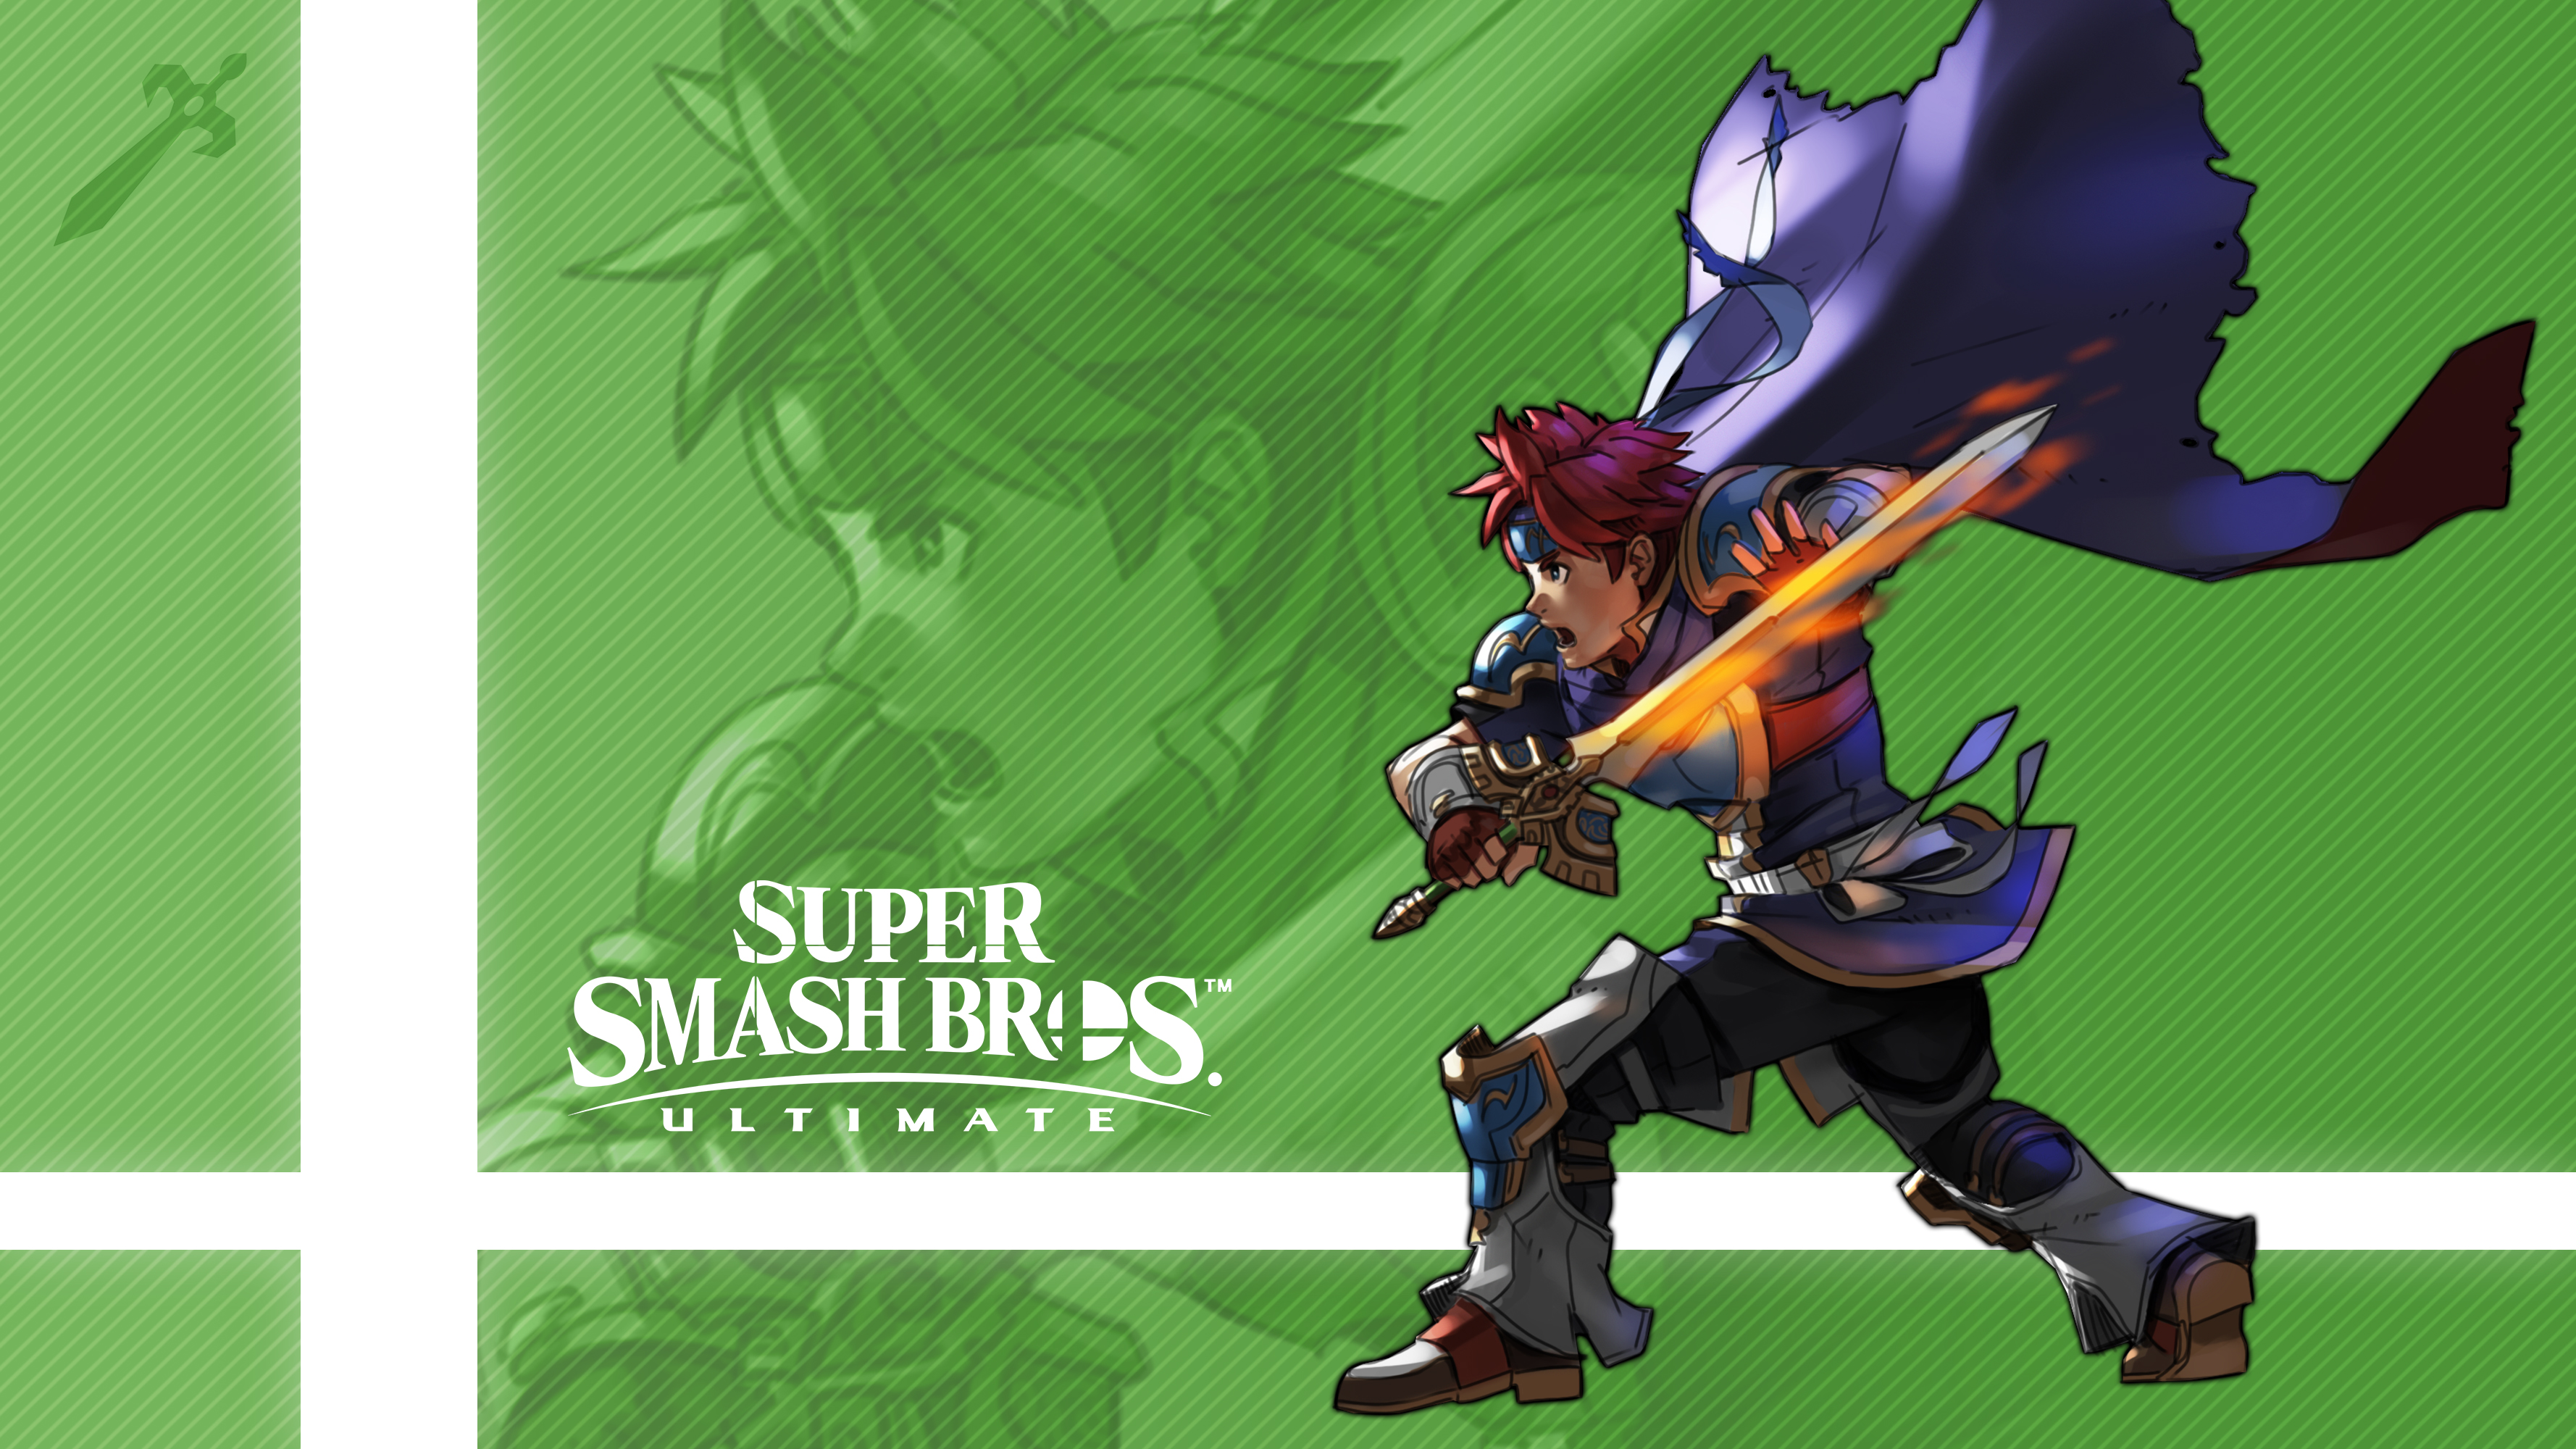 Super Smash Bros - Roy Smash Ultimate Background , HD Wallpaper & Backgrounds